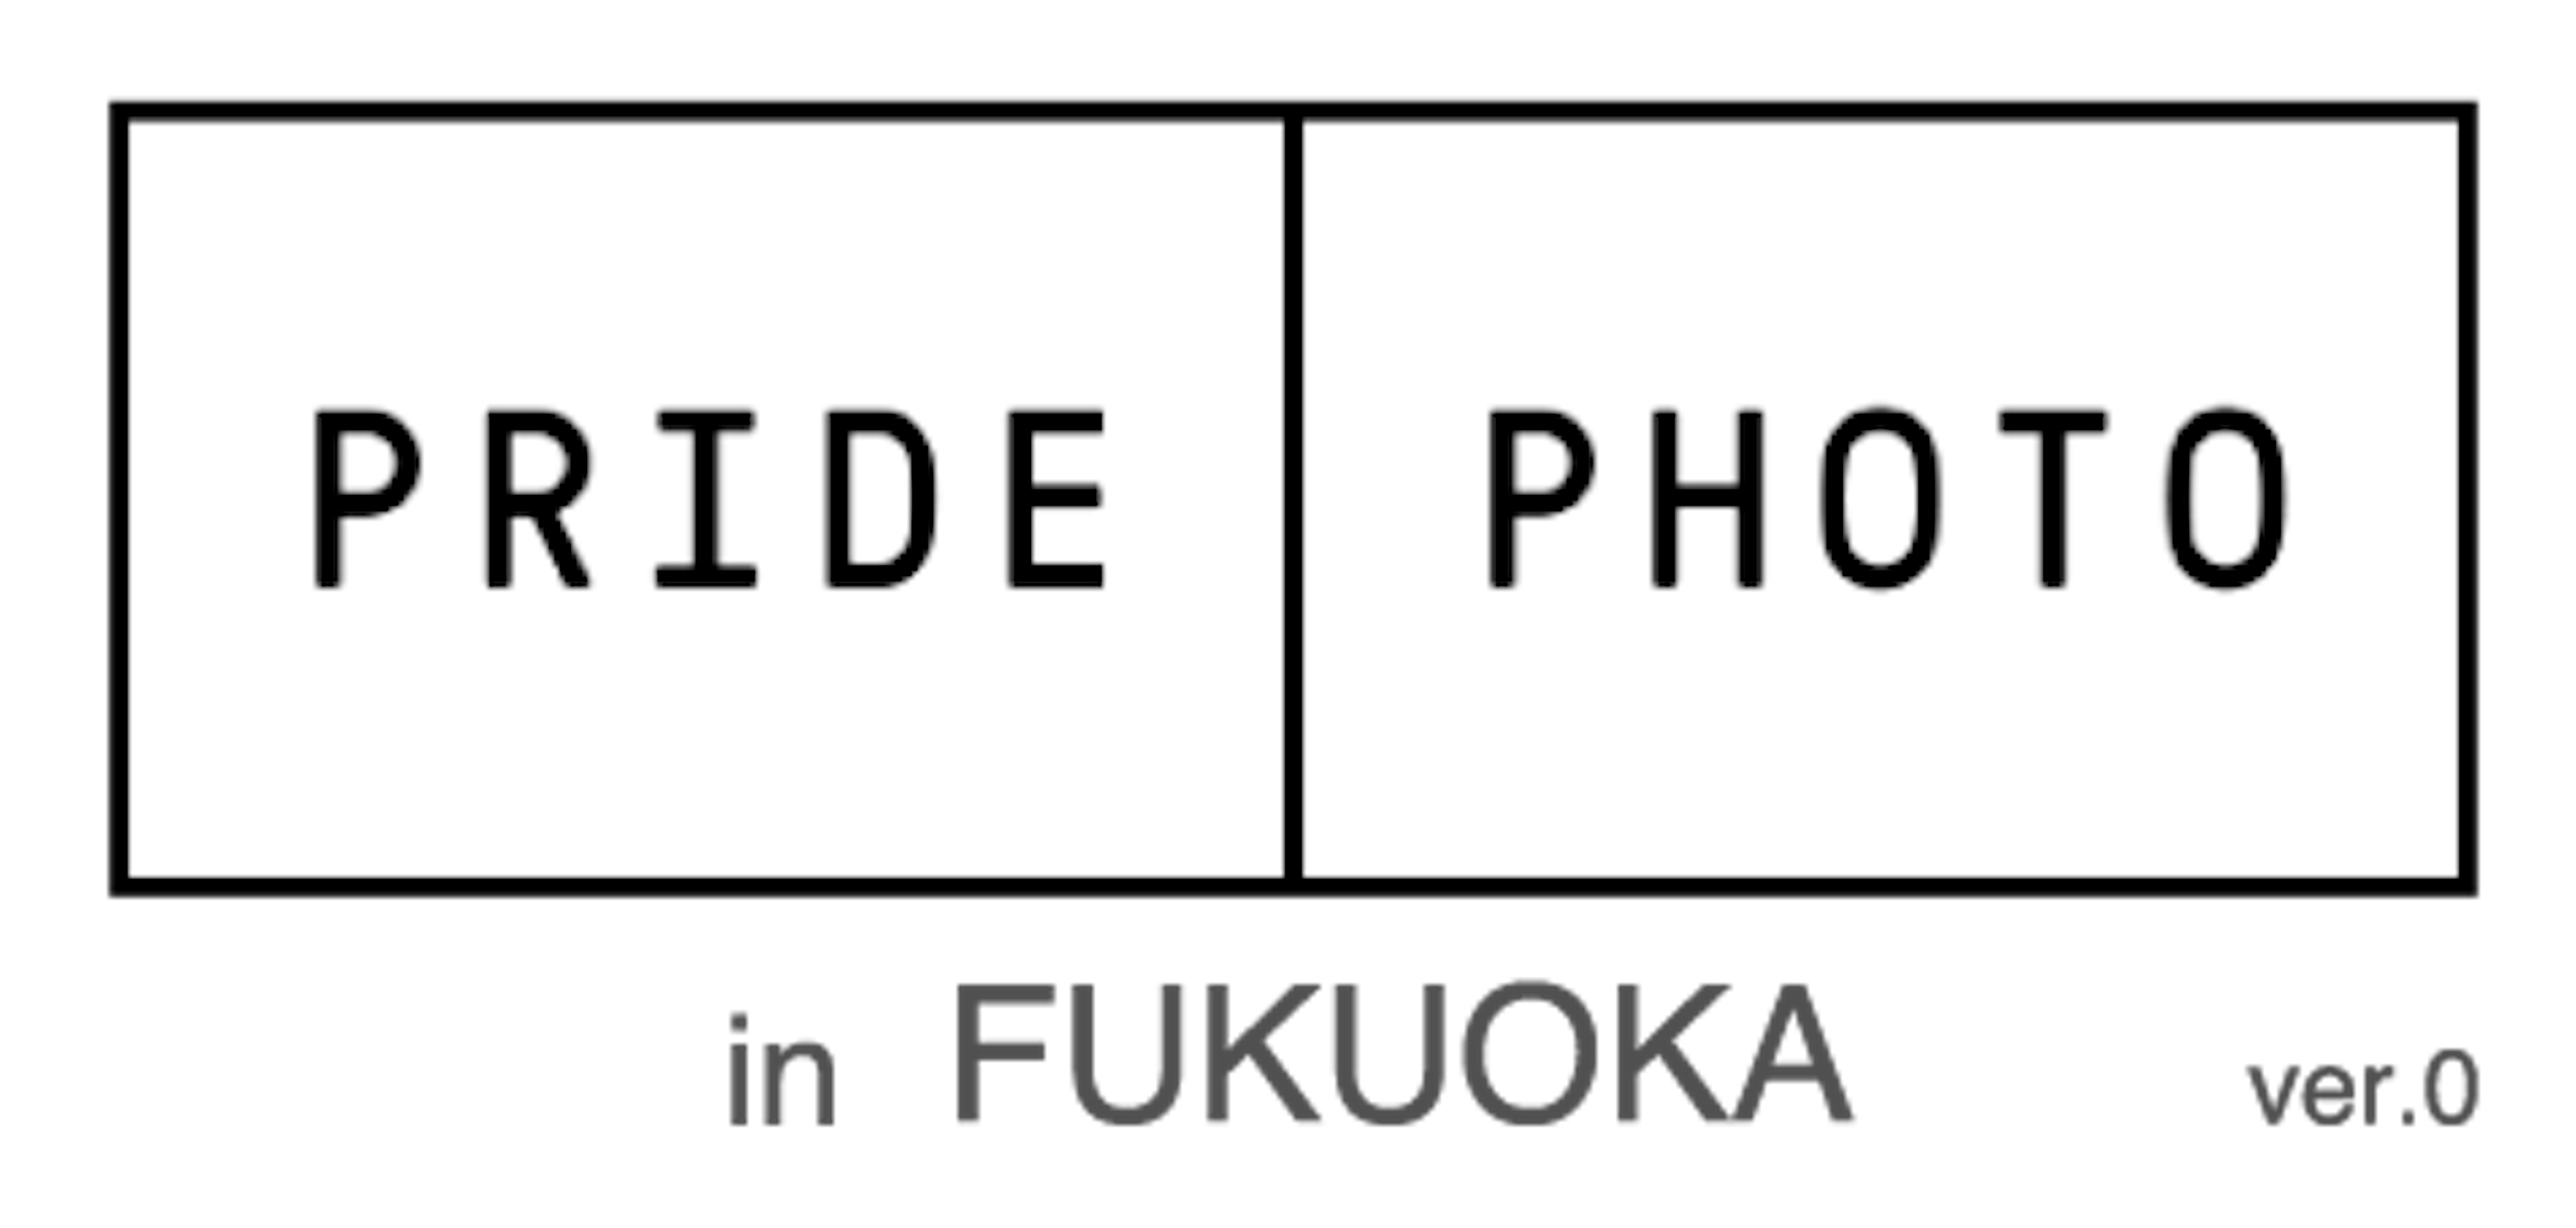 PRIDE PHOTO in FUKUOKA ver.0